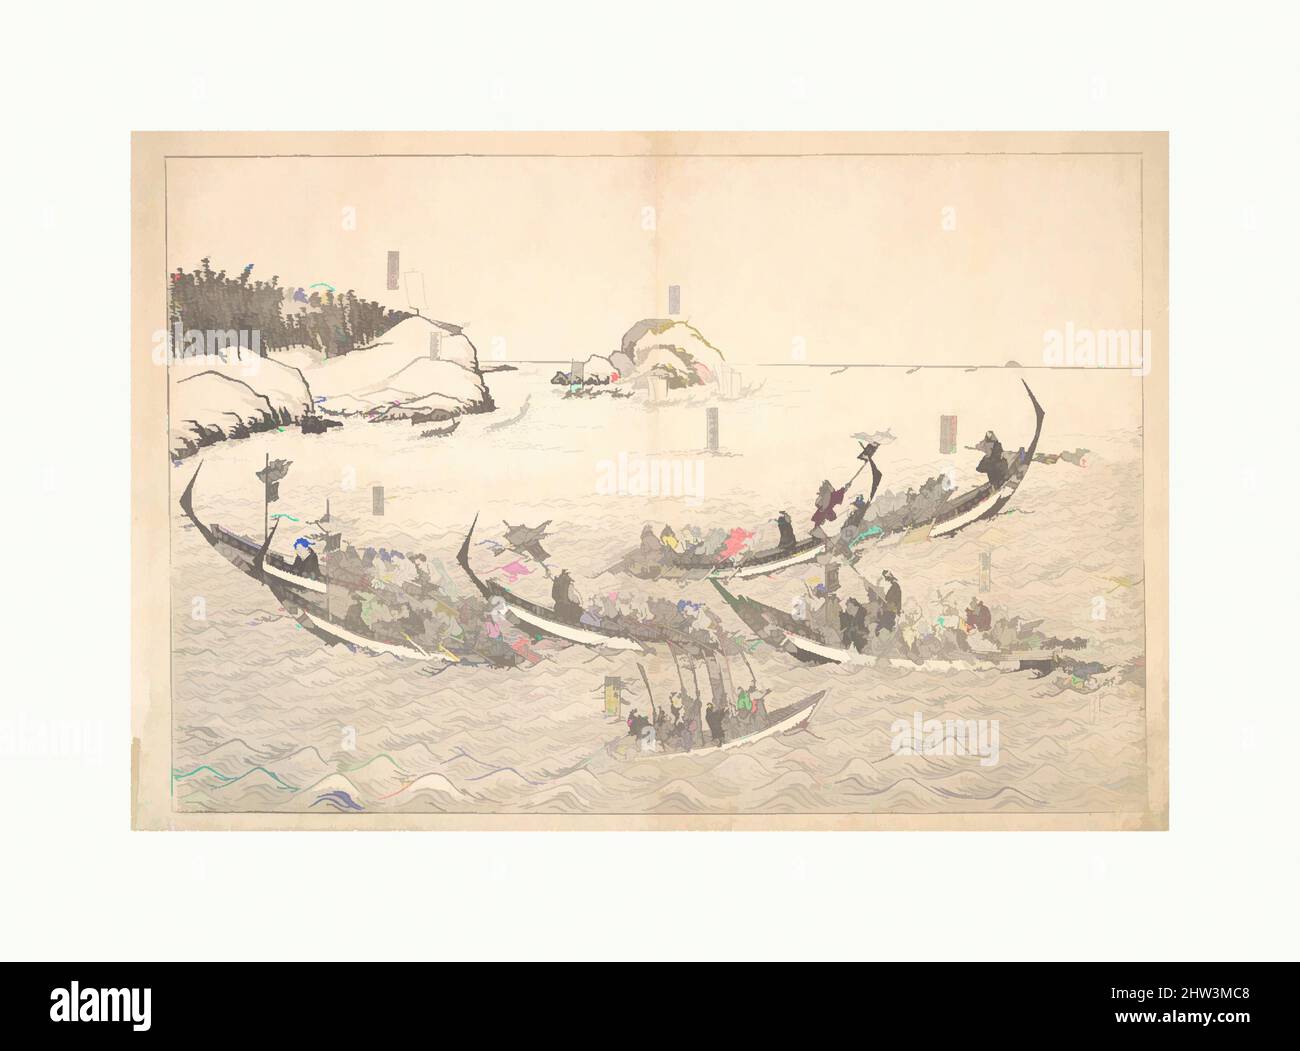 Art inspiré par la pêche aux baleines, période Edo (1615–1868), probablement 19th siècle, Japon, imprimé en bois monochrome; encre sur papier, 13 x 17 3/4 cm (33 x 45,1 cm), tirages, artiste non identifié, œuvres classiques modernisées par Artotop avec une touche de modernité. Formes, couleur et valeur, impact visuel accrocheur sur l'art émotions par la liberté d'œuvres d'art d'une manière contemporaine. Un message intemporel qui cherche une nouvelle direction créative. Artistes qui se tournent vers le support numérique et créent le NFT Artotop Banque D'Images